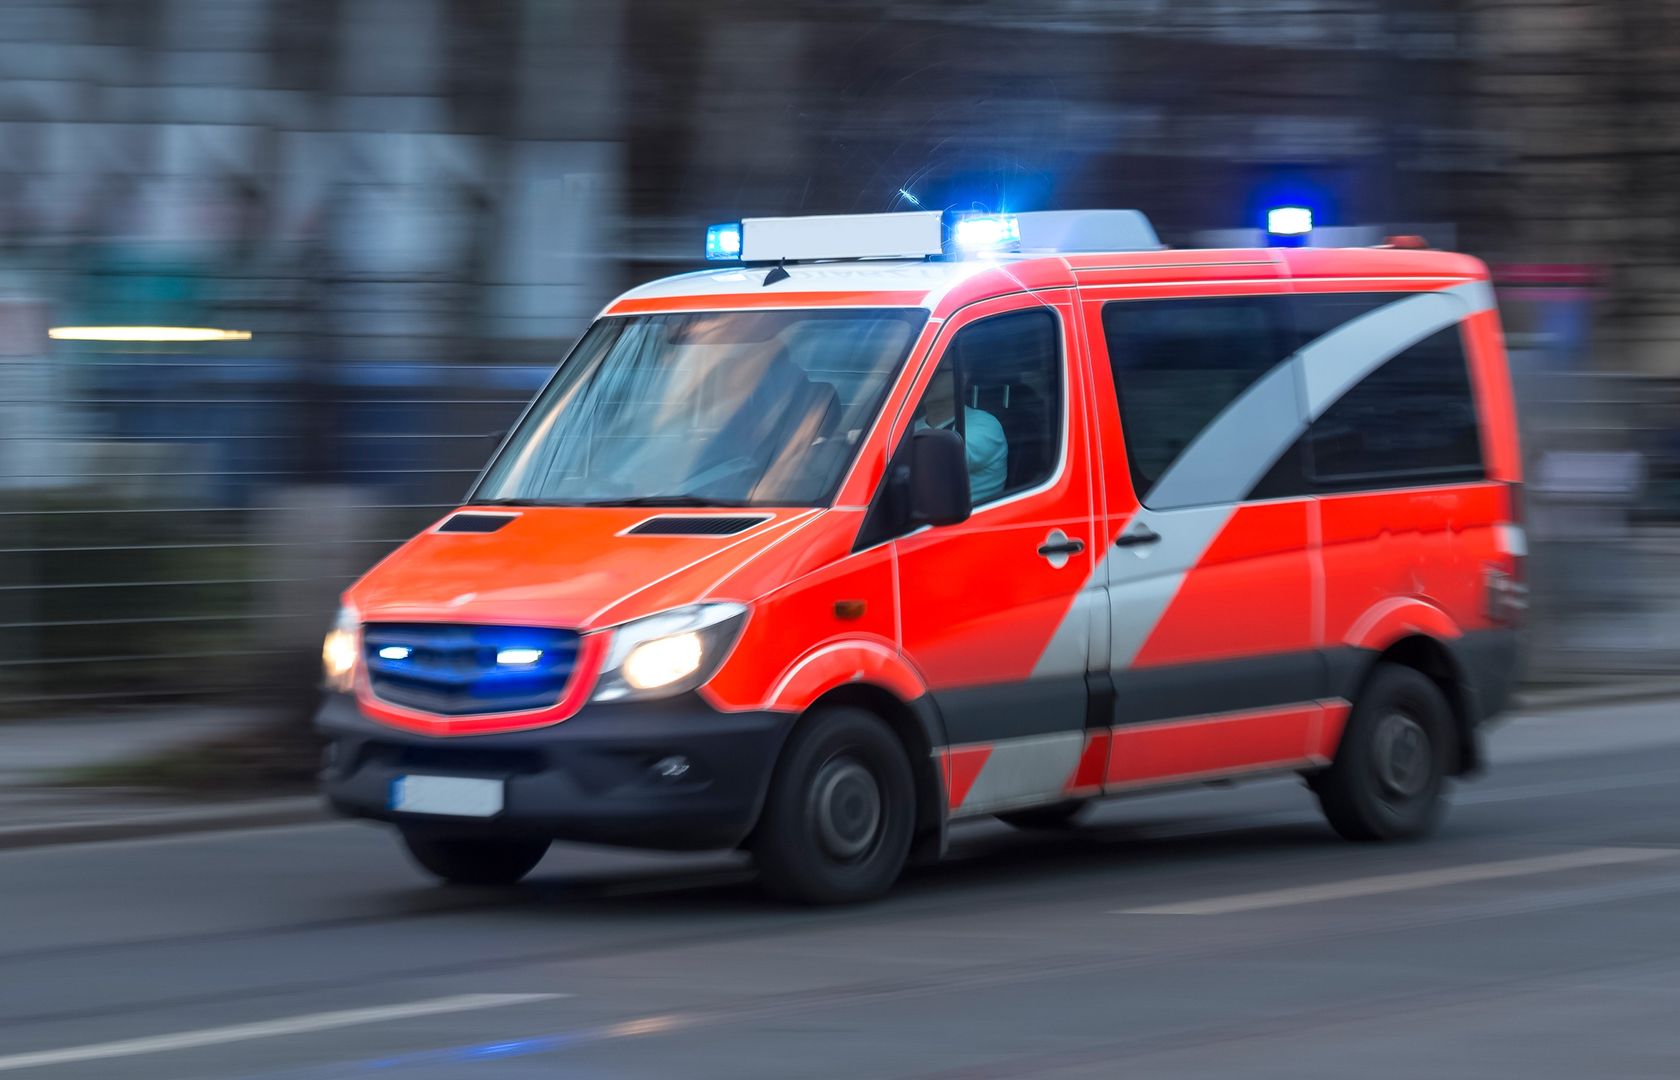 Niemcy. 31-letni Polak pobił pracownika kolei. "Gryzł funkcjonariuszy i medyków"